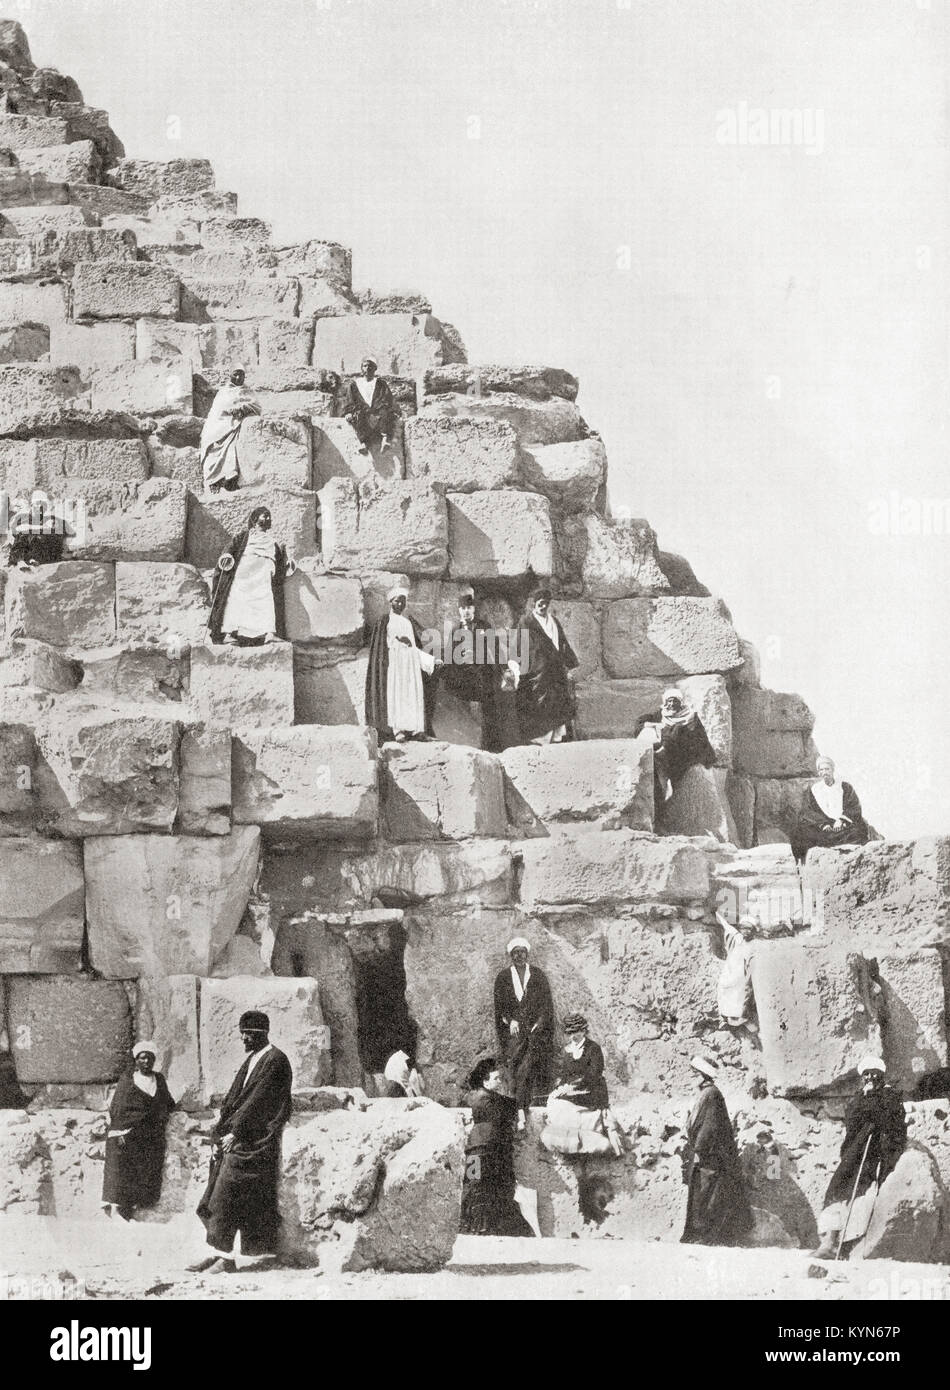 Una esquina de la Gran Pirámide de Giza aka la pirámide de Keops o Khufu, meseta de Giza en El Cairo, Egipto. A partir de las Maravillas del Mundo, publicado c.1920. Foto de stock